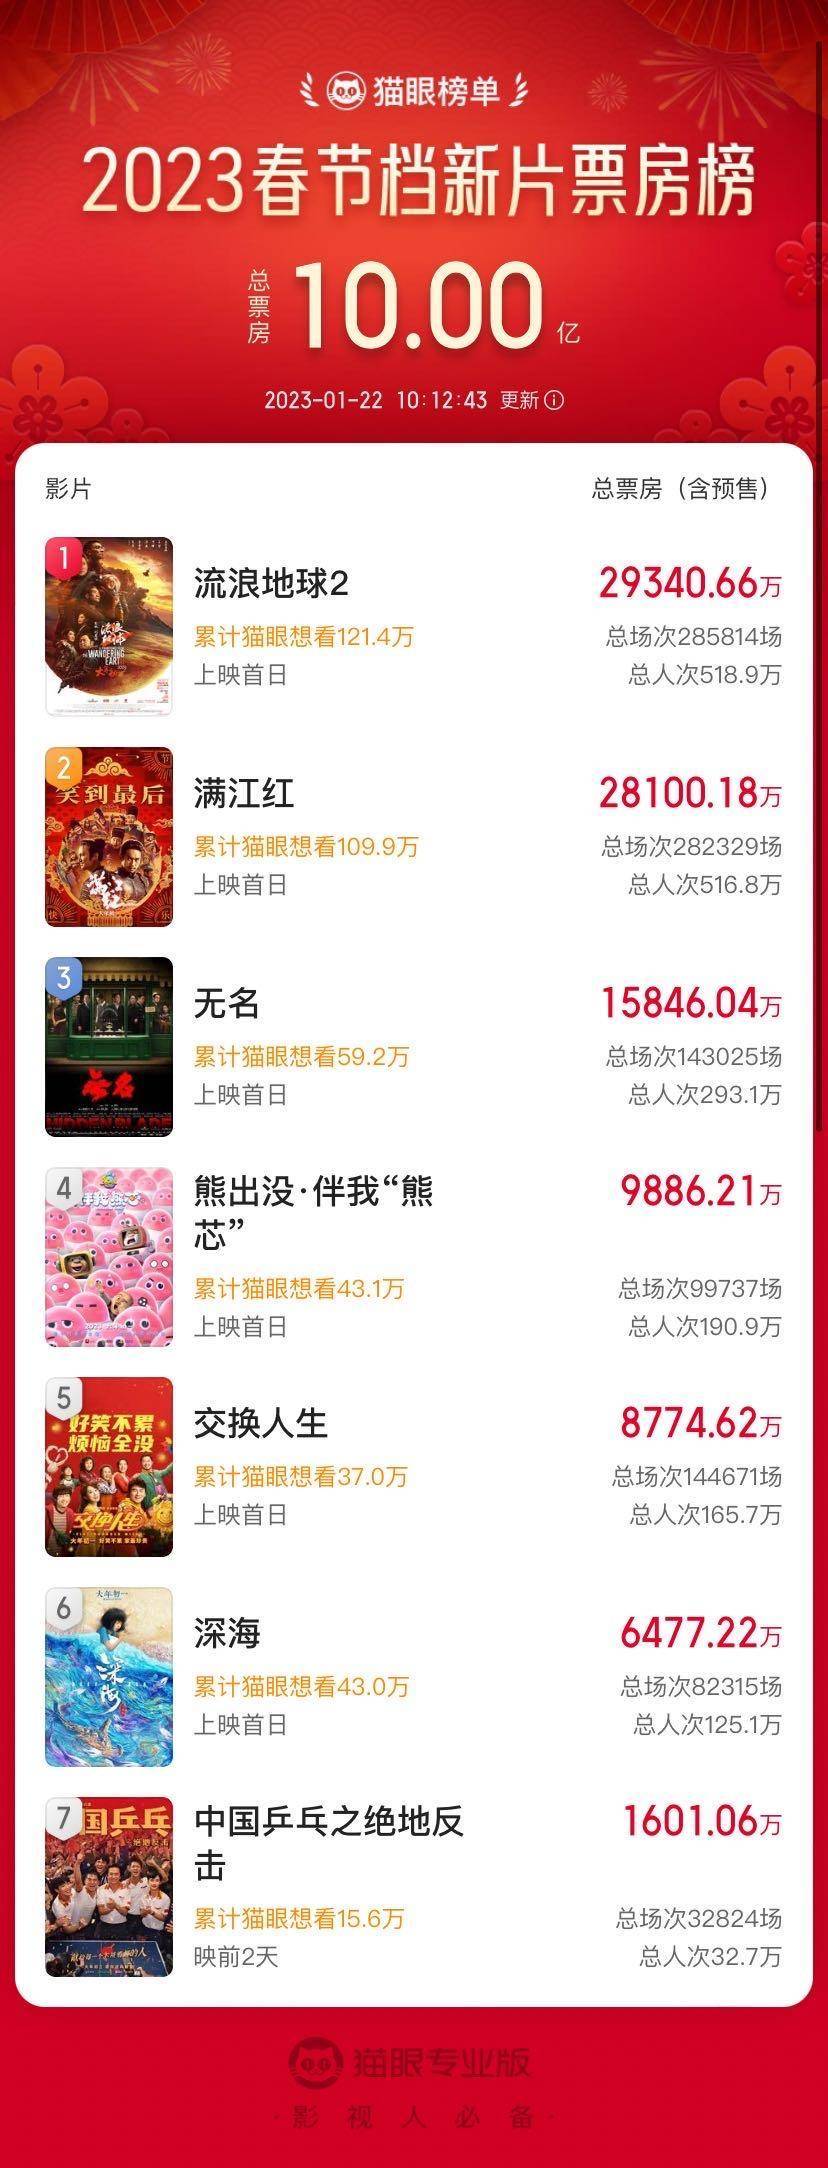 2023春节档新片总票房破10亿元